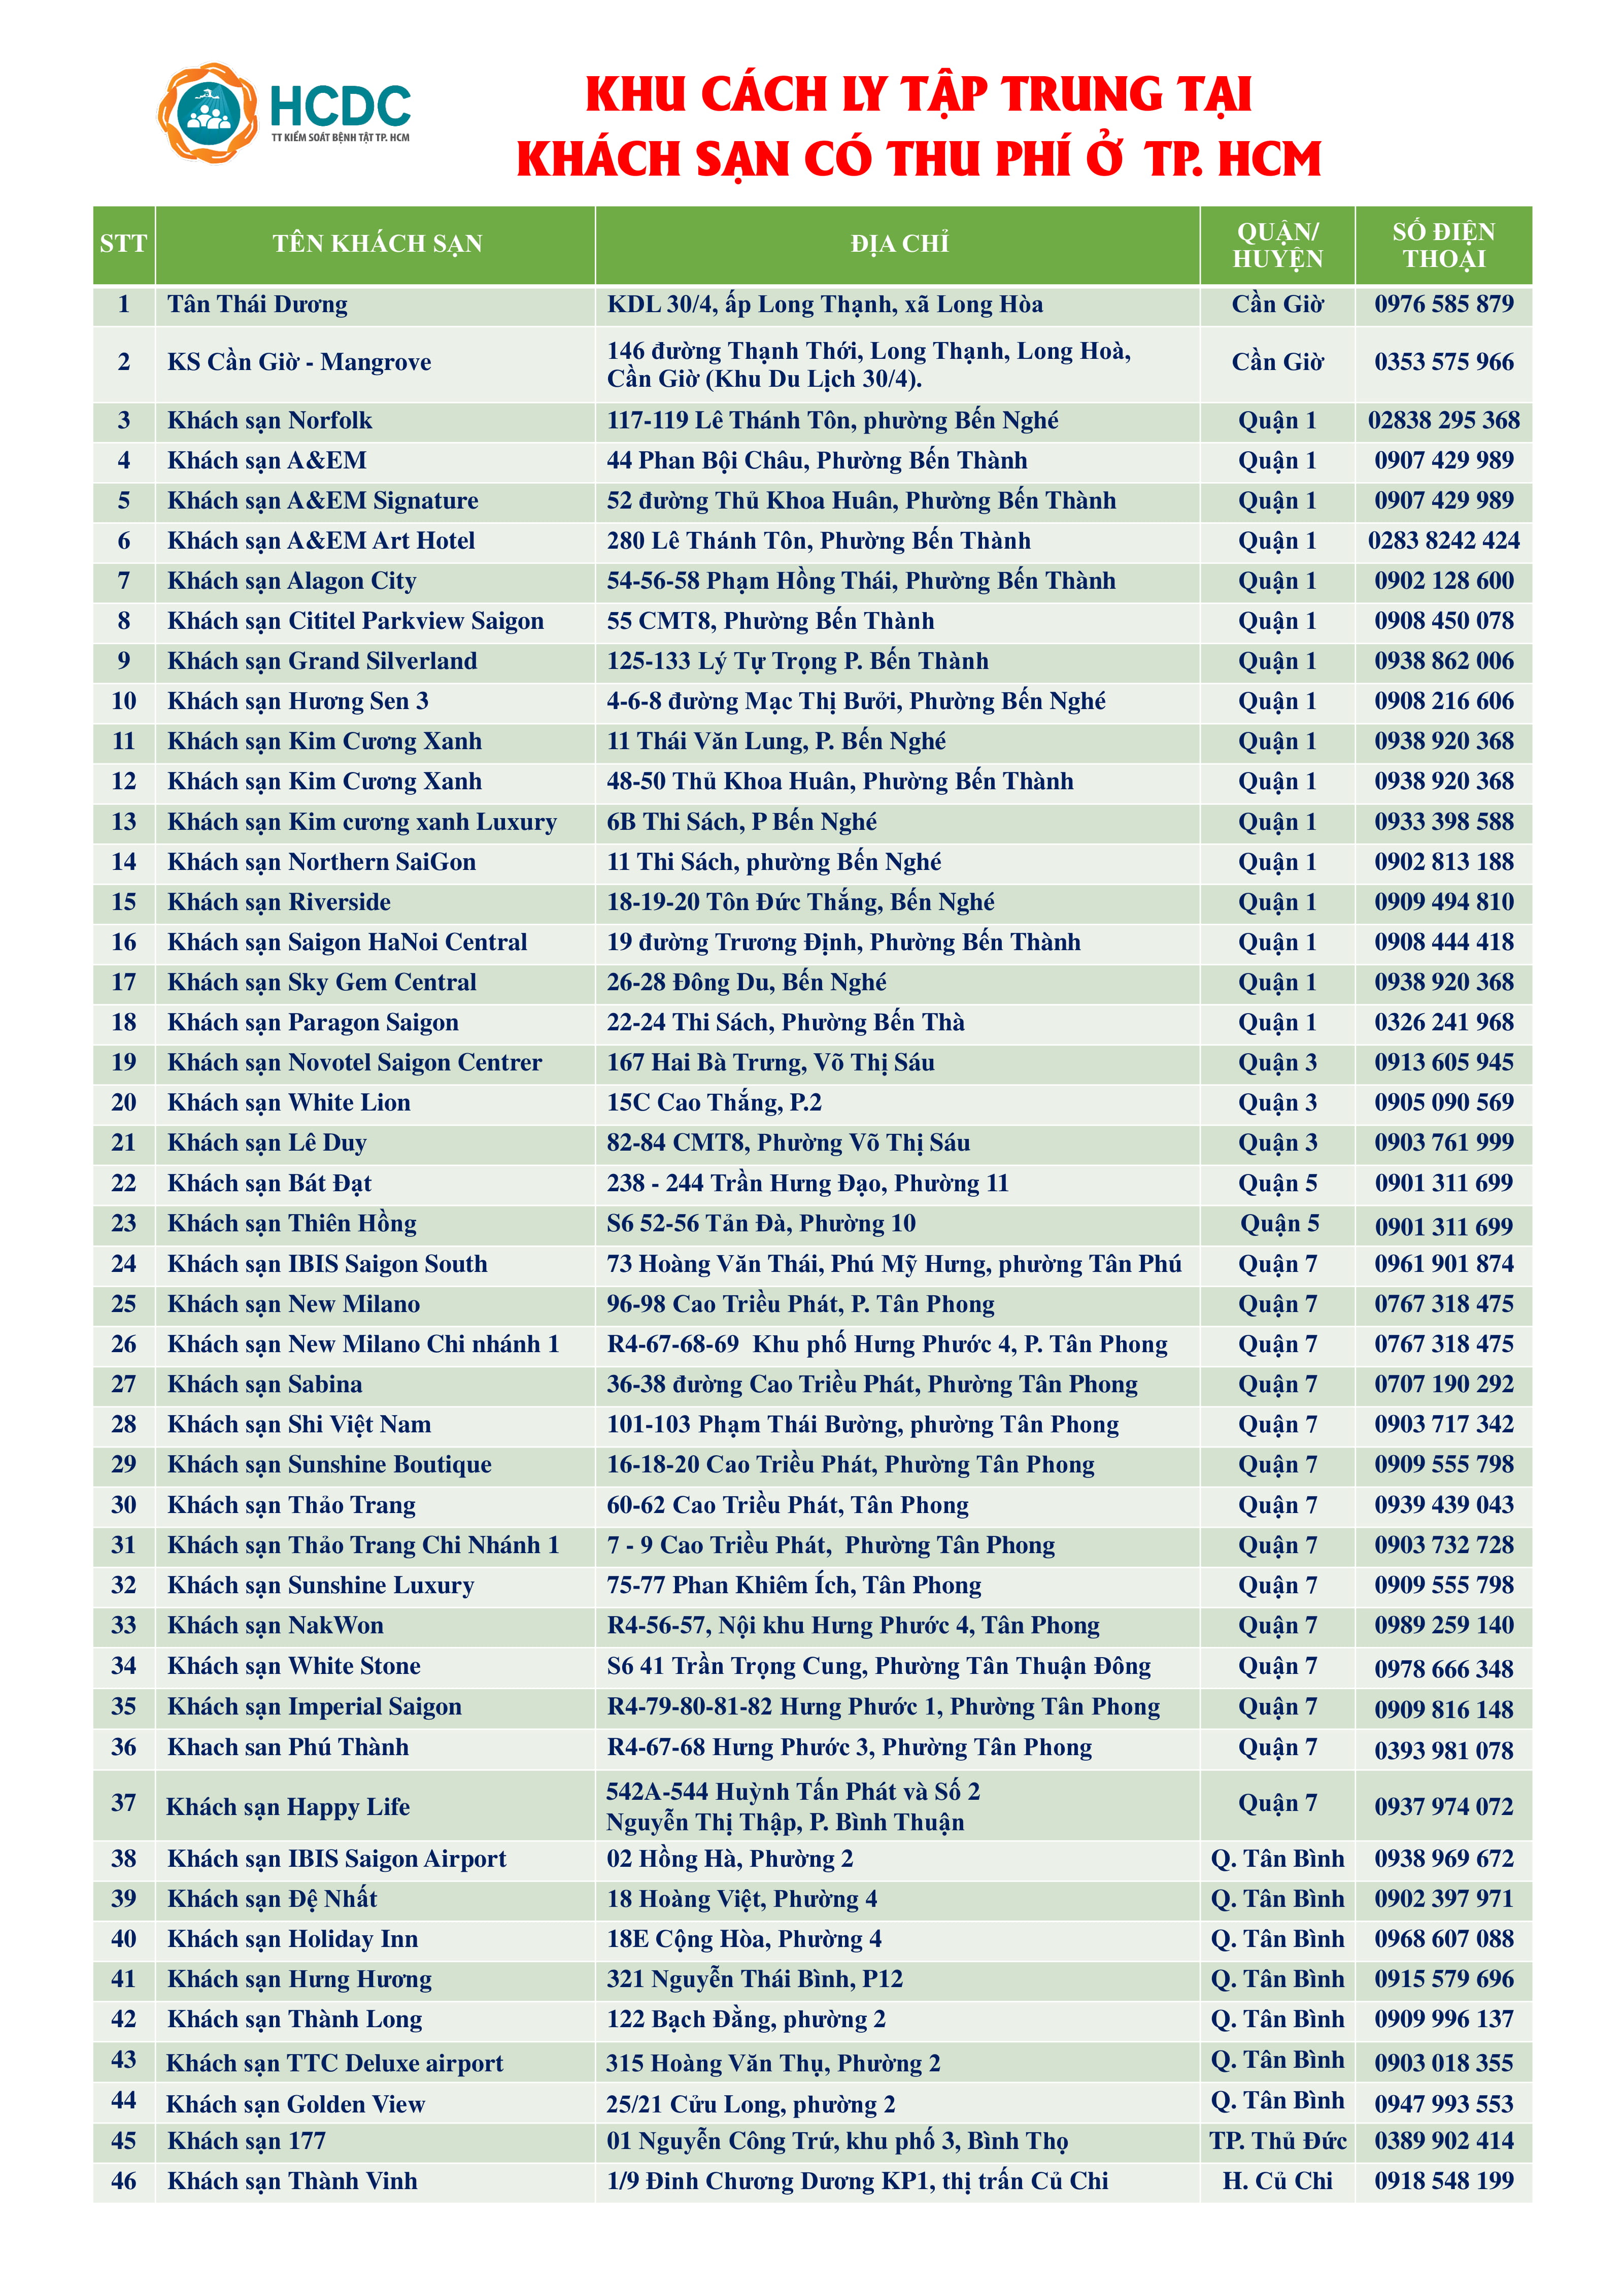 Danh sách 49 khách sạn cách ly tập trung có trả phí tại TP.HCM - 1